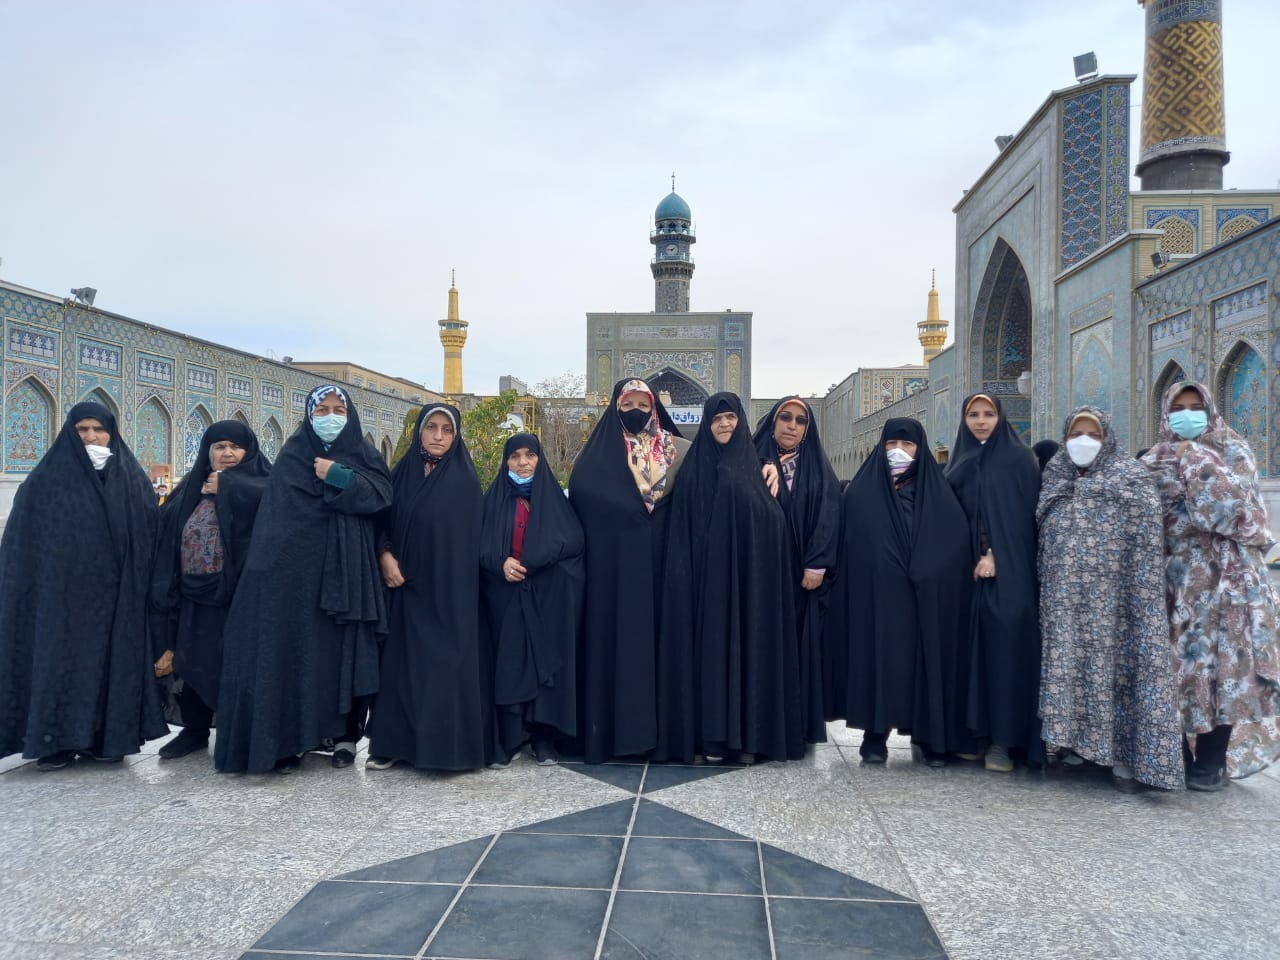 زائران اولی روستای ناریان طالقان با محوریت مسجد رسول اکرم(ص) به مشهد مقدس اعزام شدند